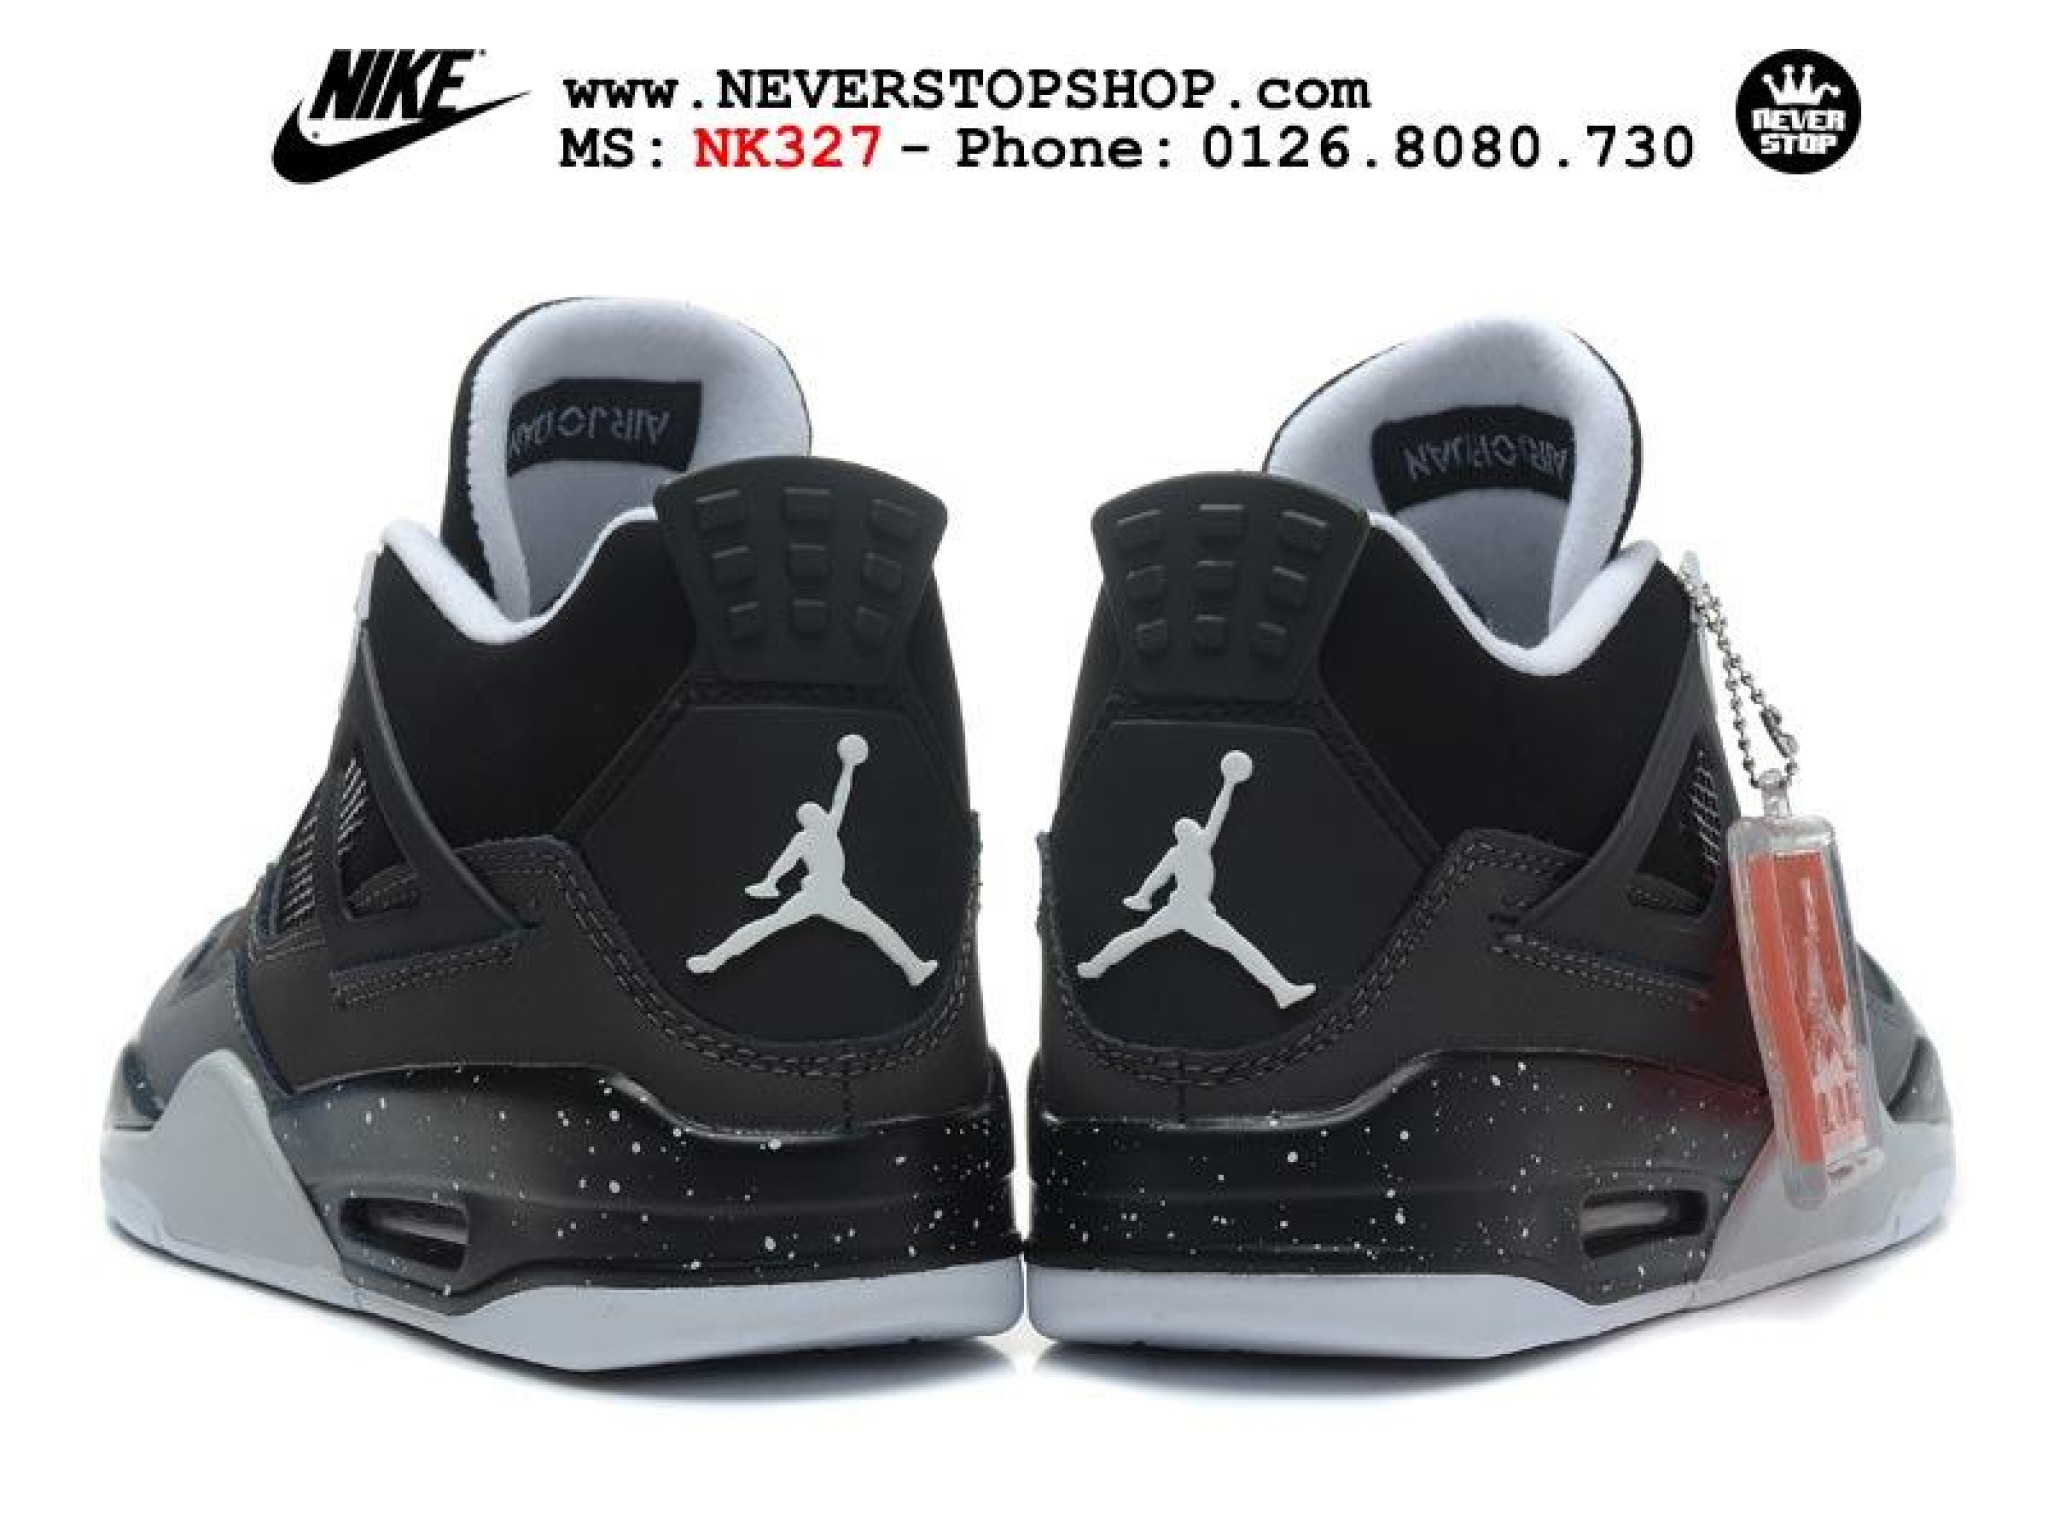 Nike air jordan 4 fear. Nike Air Jordan 4 Black. Nike Air Jordan 4 Retro. Nike Air Jordan 4 черные. Nike Air Jordan 4 Grey Black.